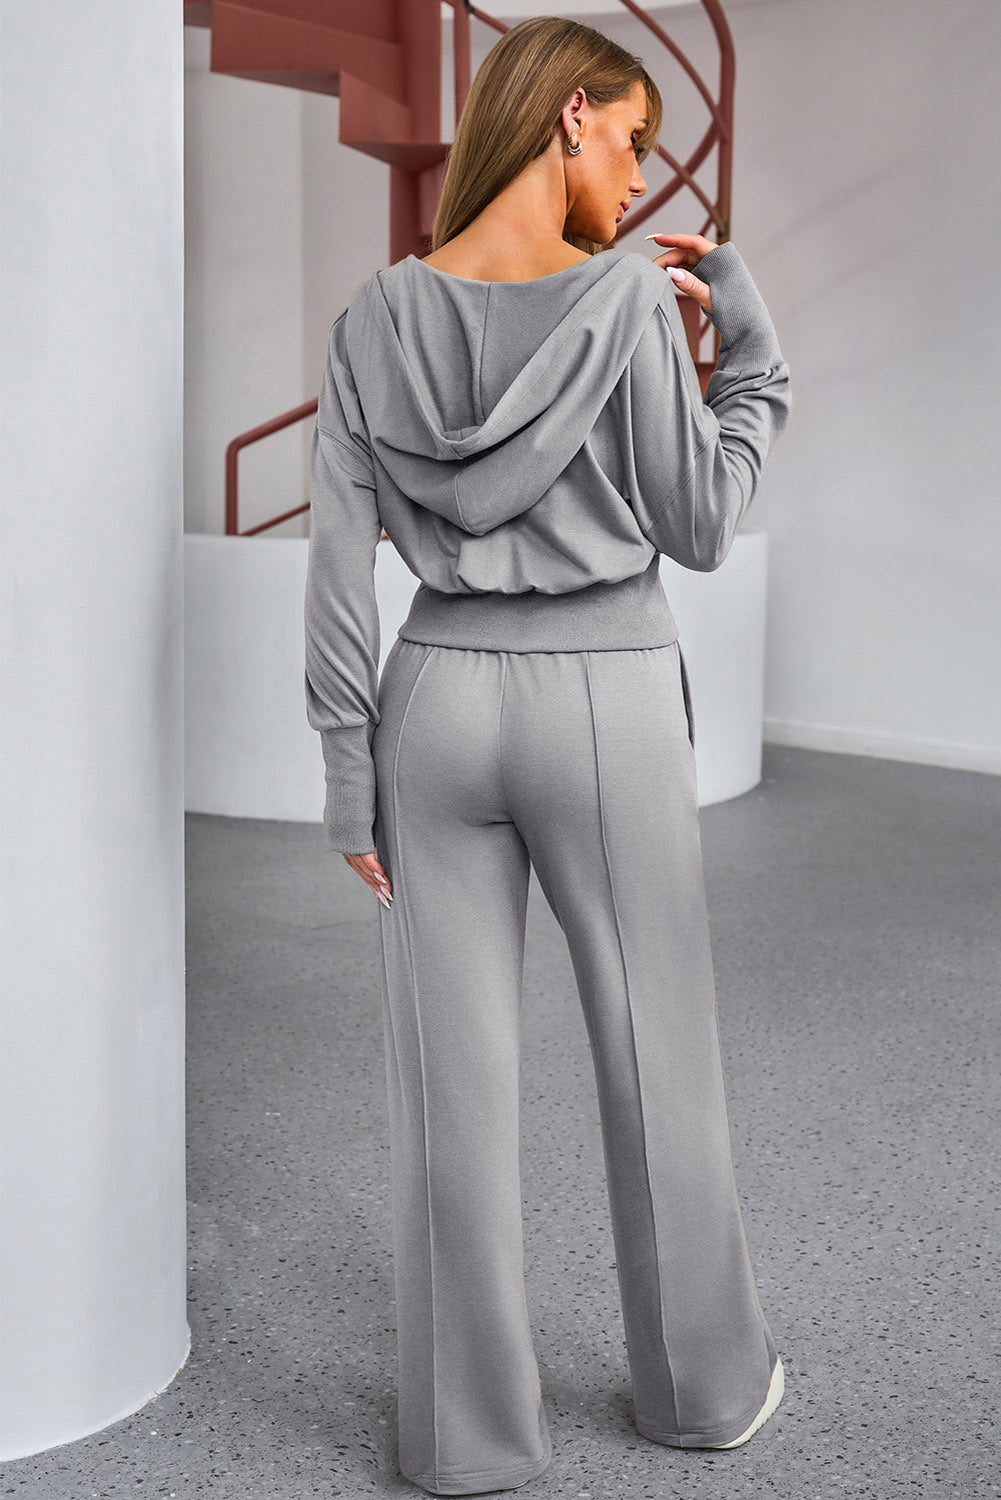 TEEK - Charcoal Zip Hoodie and Drawstring Pants Active Set SET TEEK Trend   